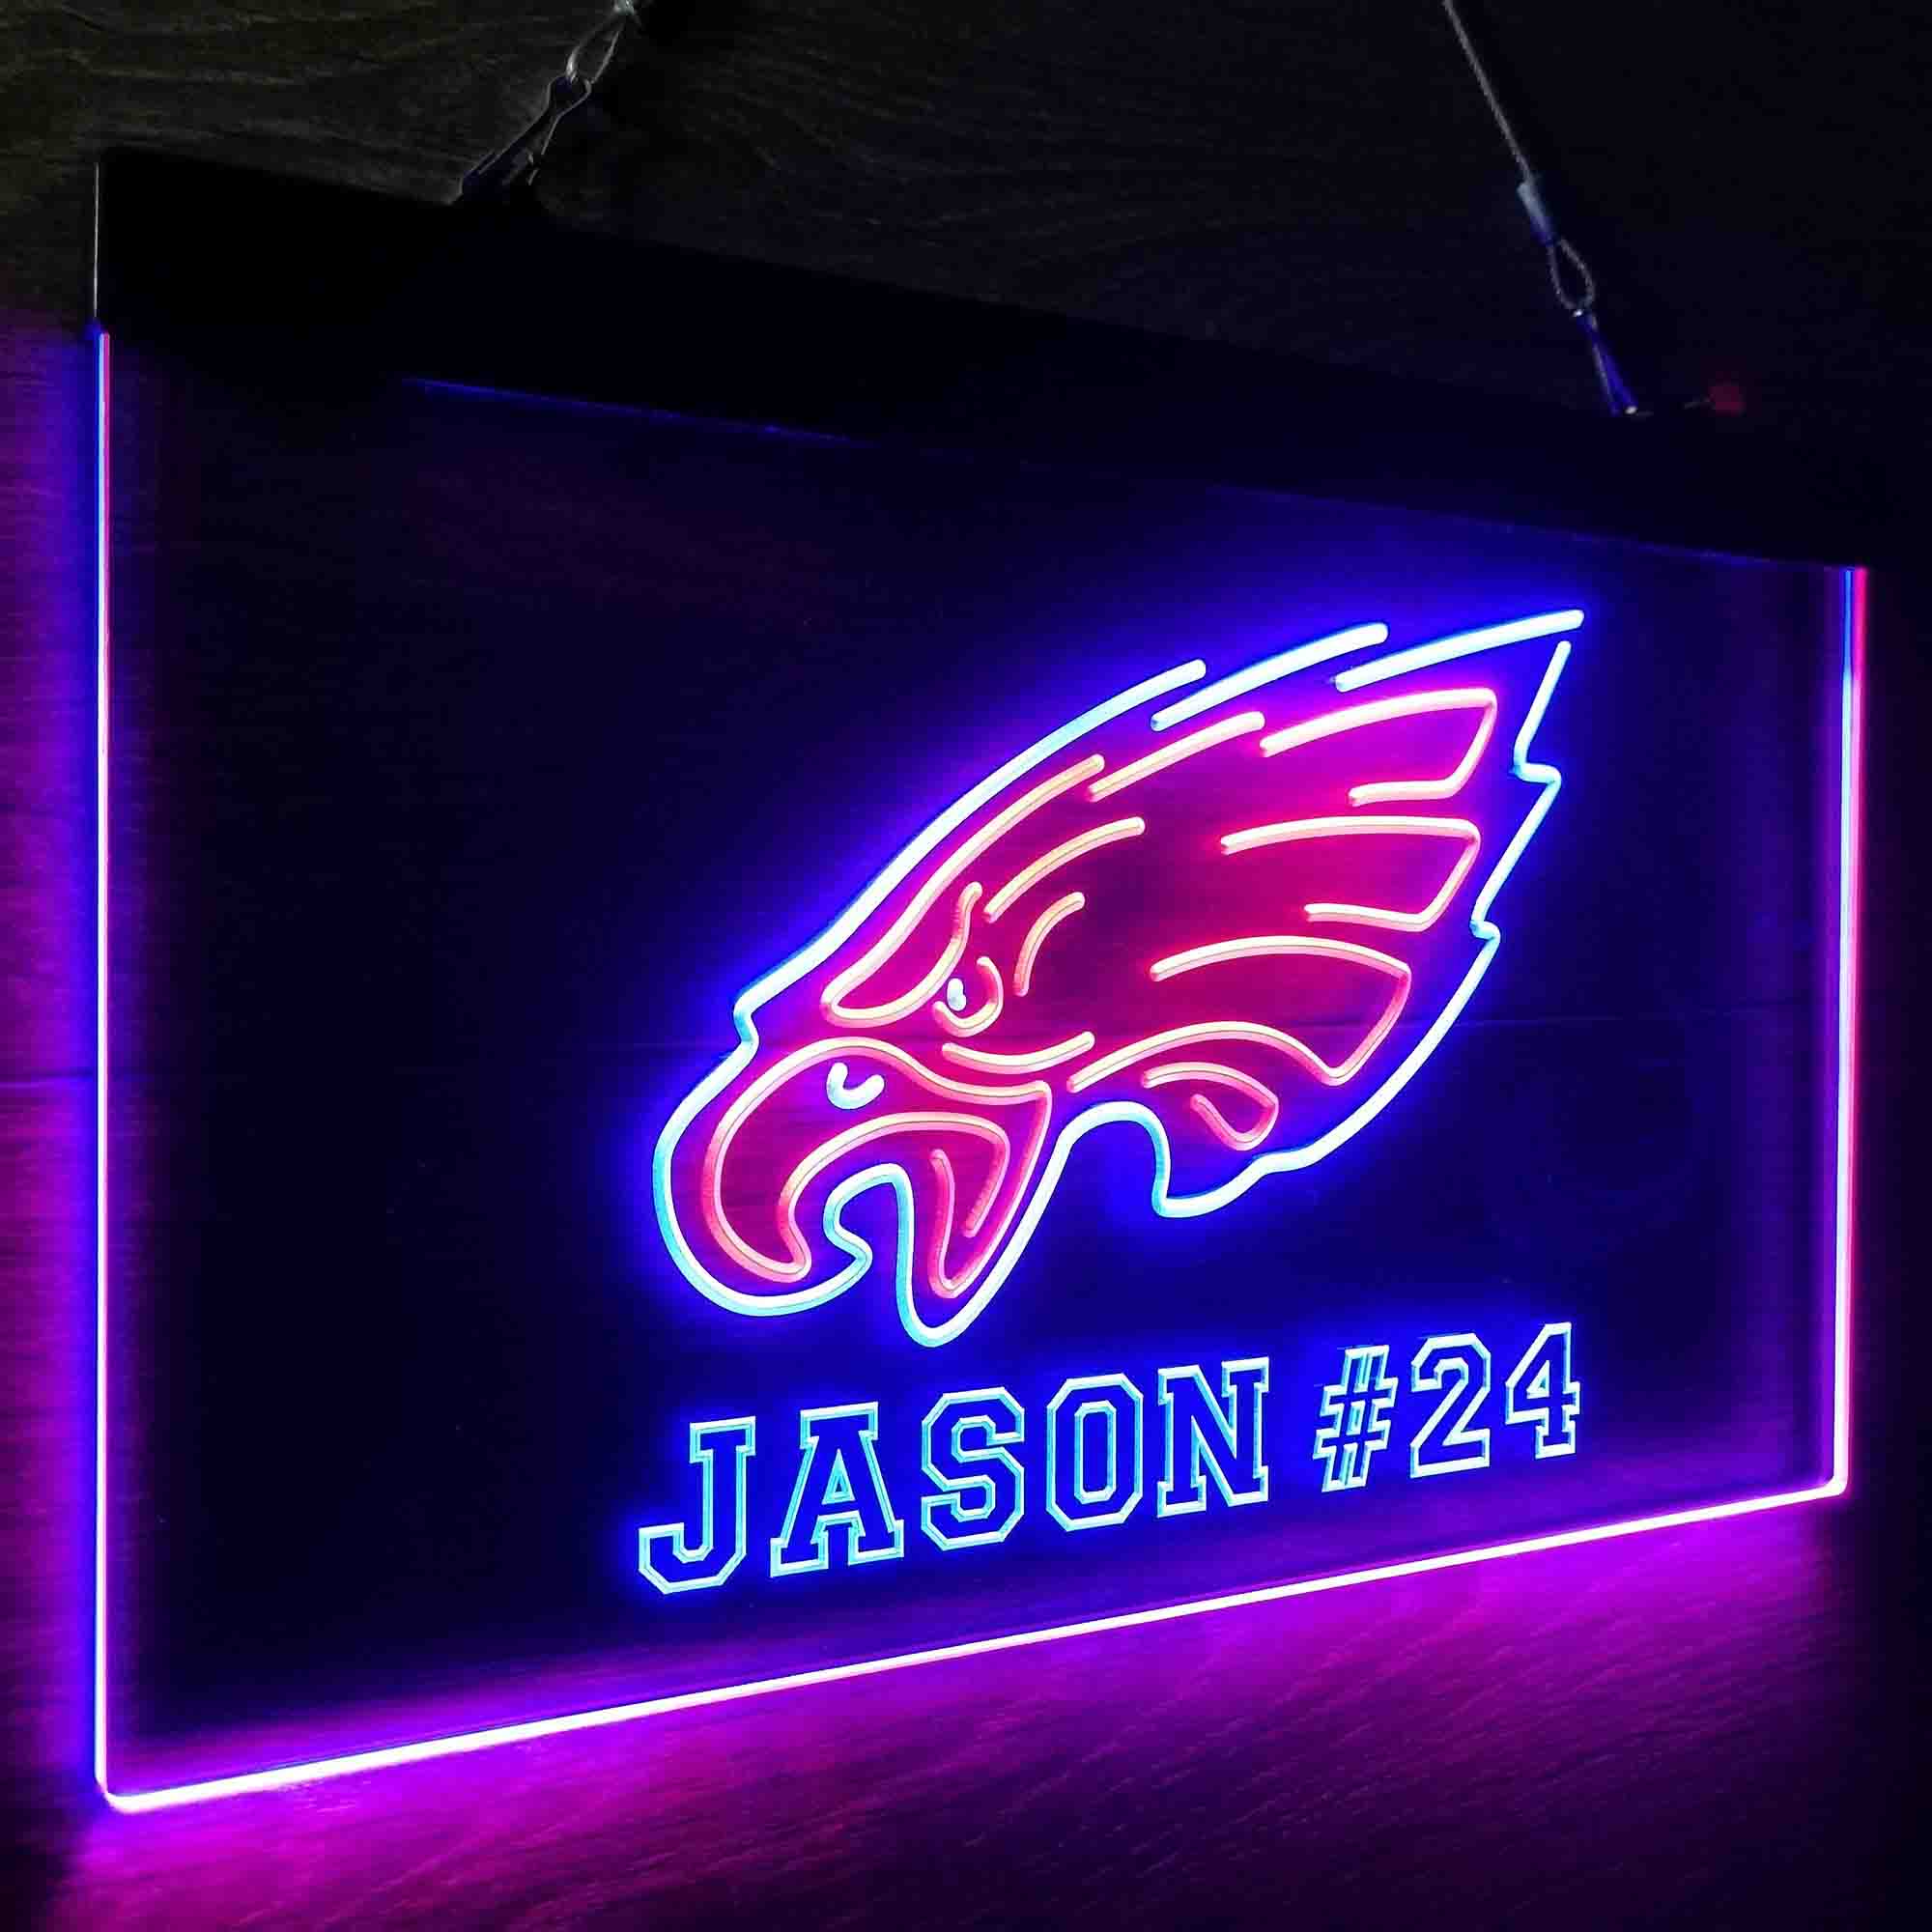 Custom Name Philadelphia Eagles Home Bar Neon LED Sign